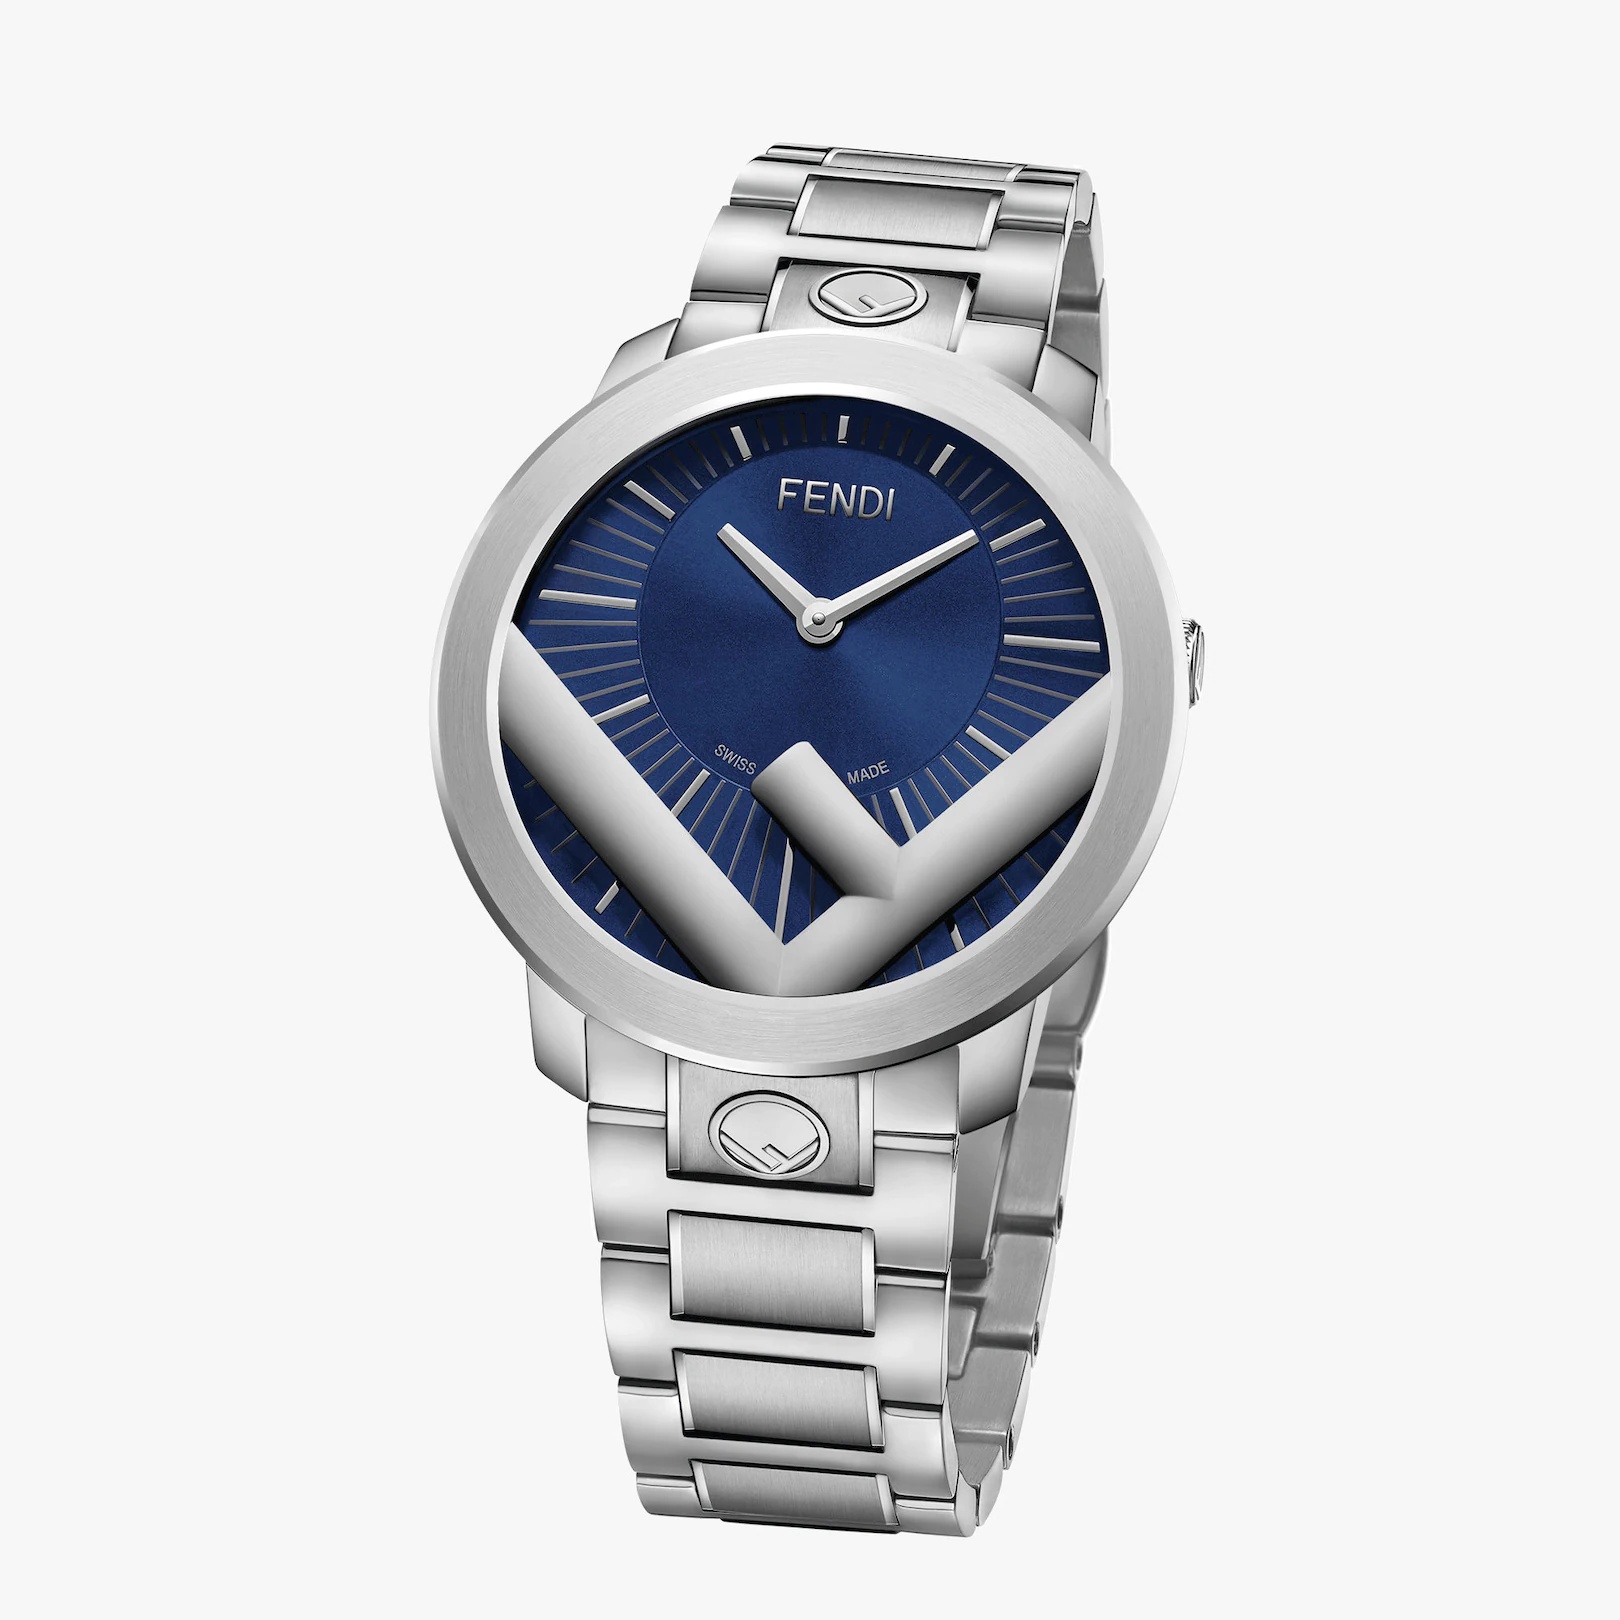 41 mm (1.6 inch) - Watch with F is Fendi logo - 2